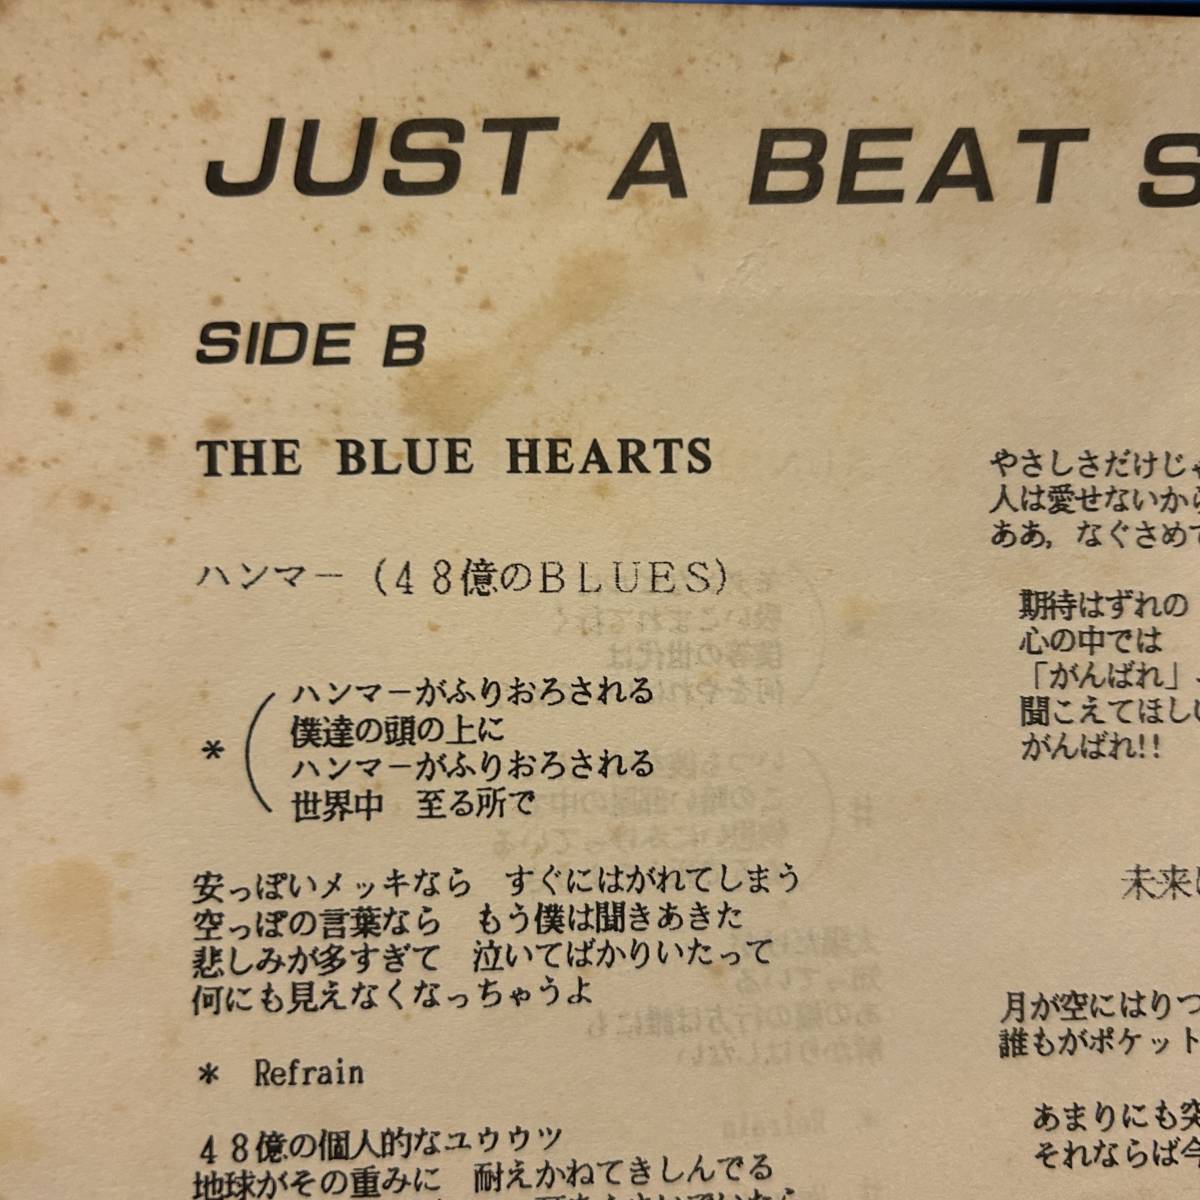 即決 送料込 ポスター付! Just A Beat Show The Blue Hearts(ブルーハーツ) LA-PPISCH(レピッシュ) London Times(ロンドンタイムス)_画像6